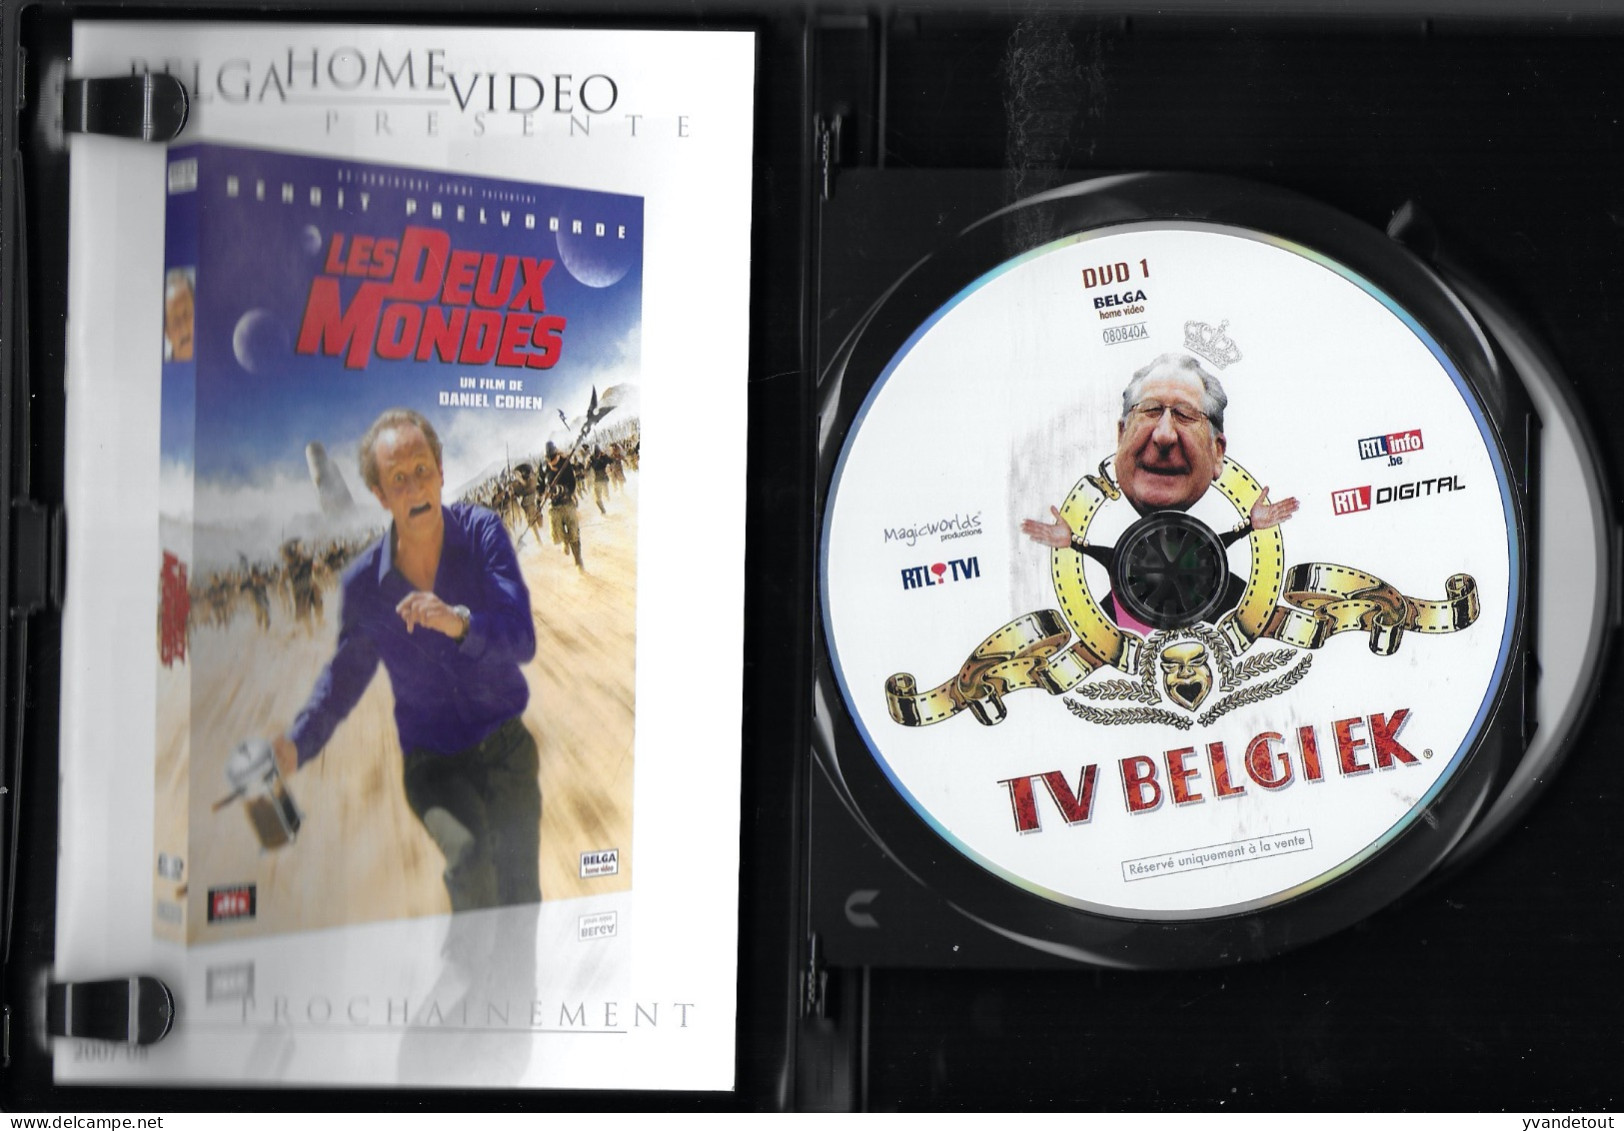 DVD - L'intégrale Des 2 Premières Saisons. TV Belgiek.  Humour. Comédie. Rare. Double DVD. Jaquette - Séries Et Programmes TV